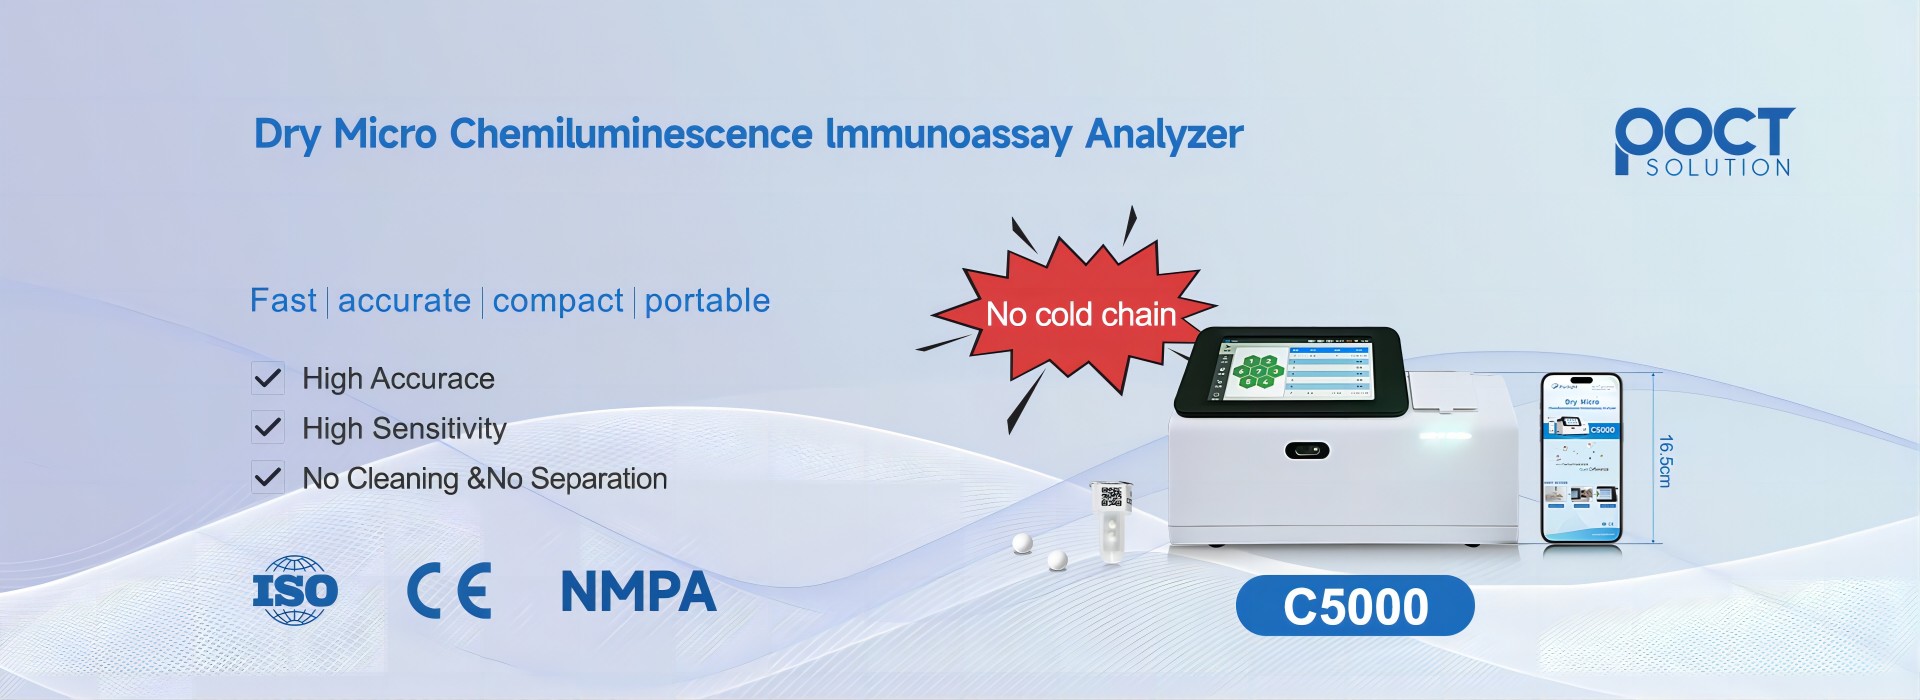 Untuk apa penganalisis immunoassay chemiluminescence digunakan?
        